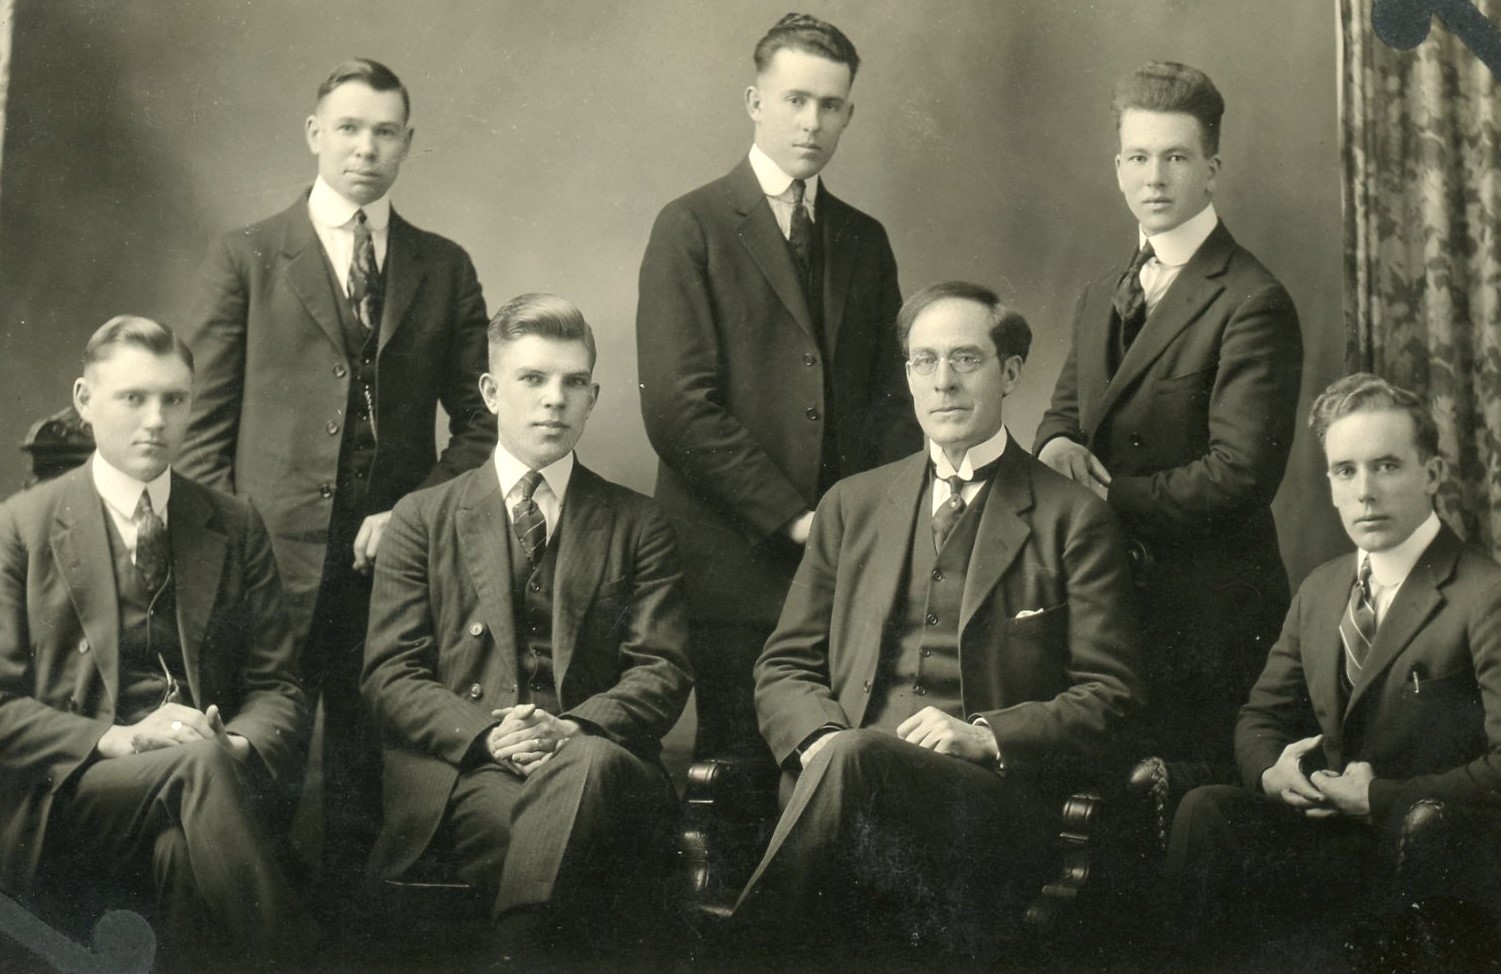 Canada Mission Picture, Circa 1923